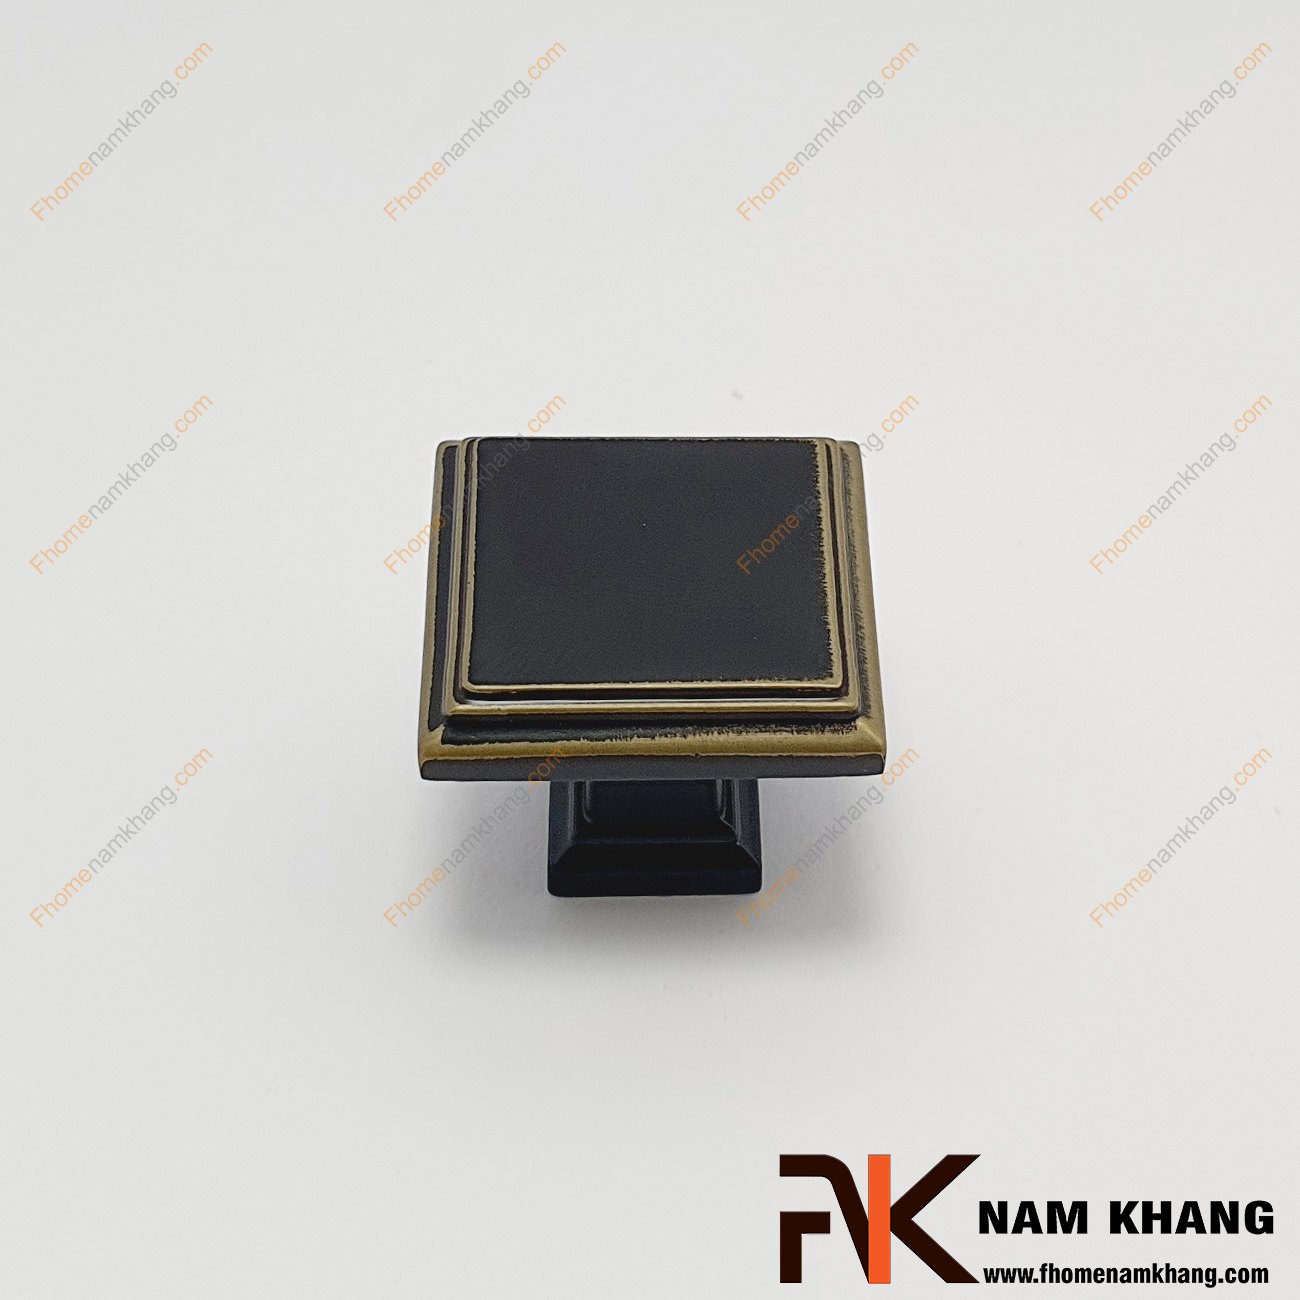 Núm cửa tủ dạng vuông màu đen viền vàng NK230N-DV có thiết kế đơn giản từ hợp kim cao cấp với khuôn dạng đầu vuông và đế vuông đứng. Sản phẩm giúp thực hiện thao tác đóng mở cánh cửa tủ trở nên dễ dàng và thuận tiện. 